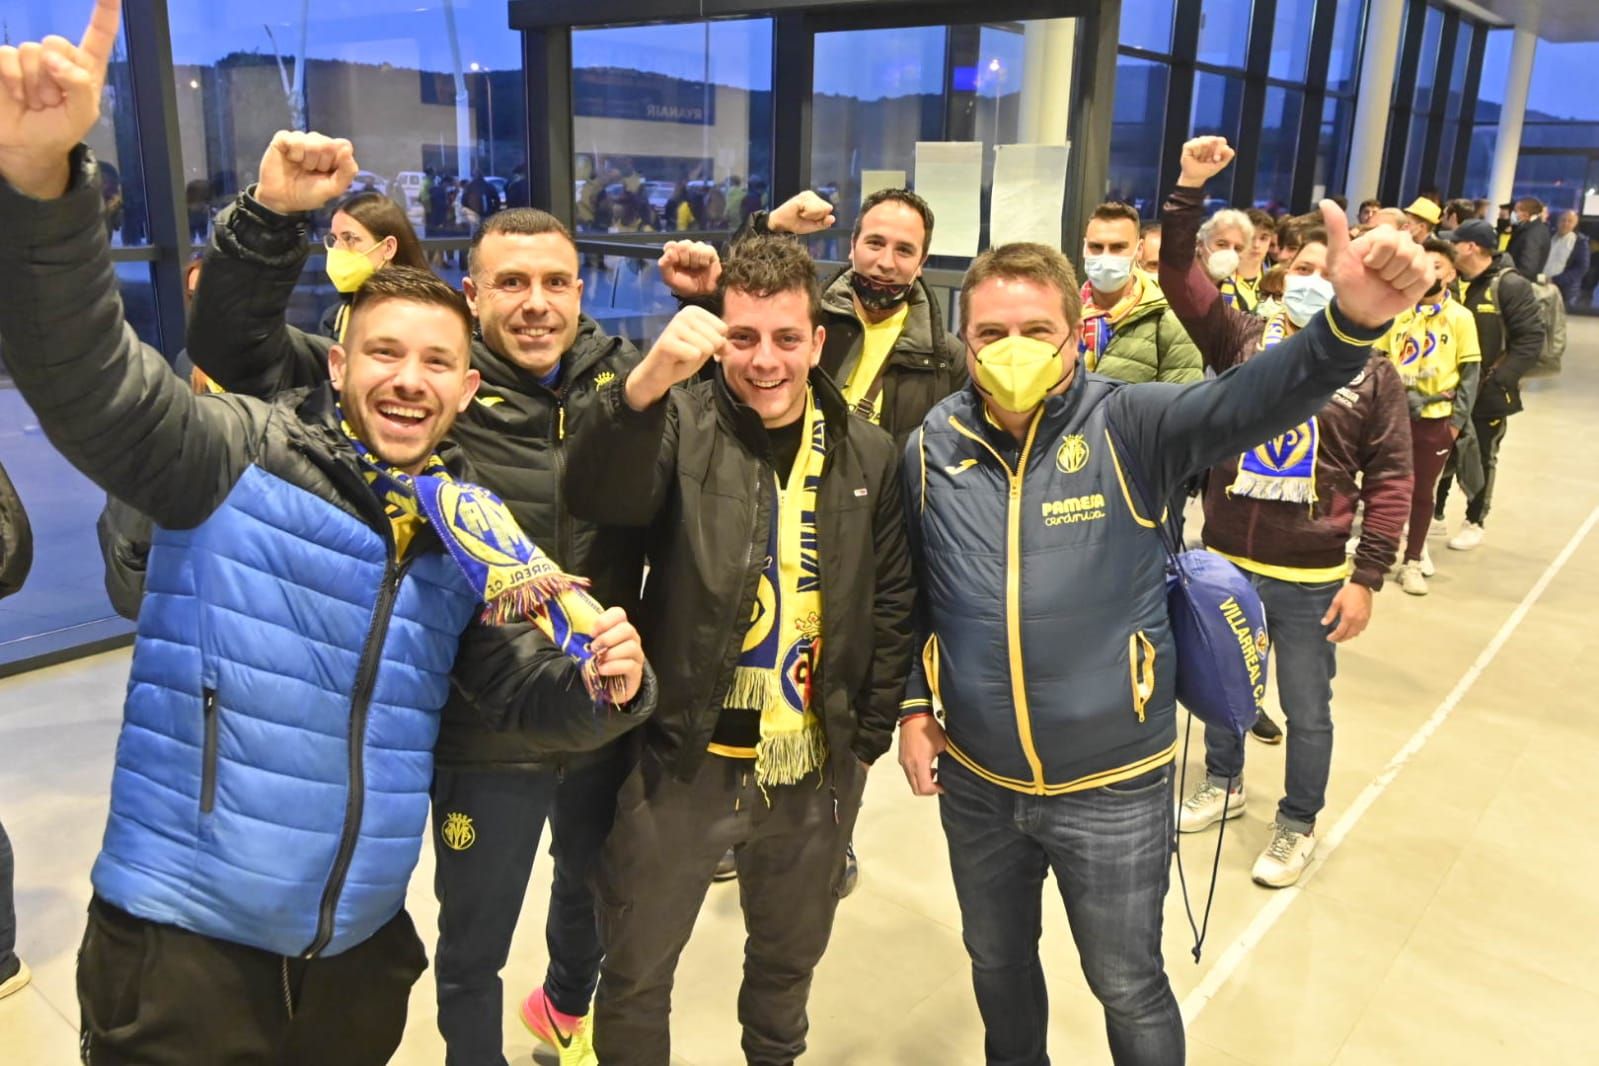 Salida de los aficionados del Villarreal desde el aeropuerto